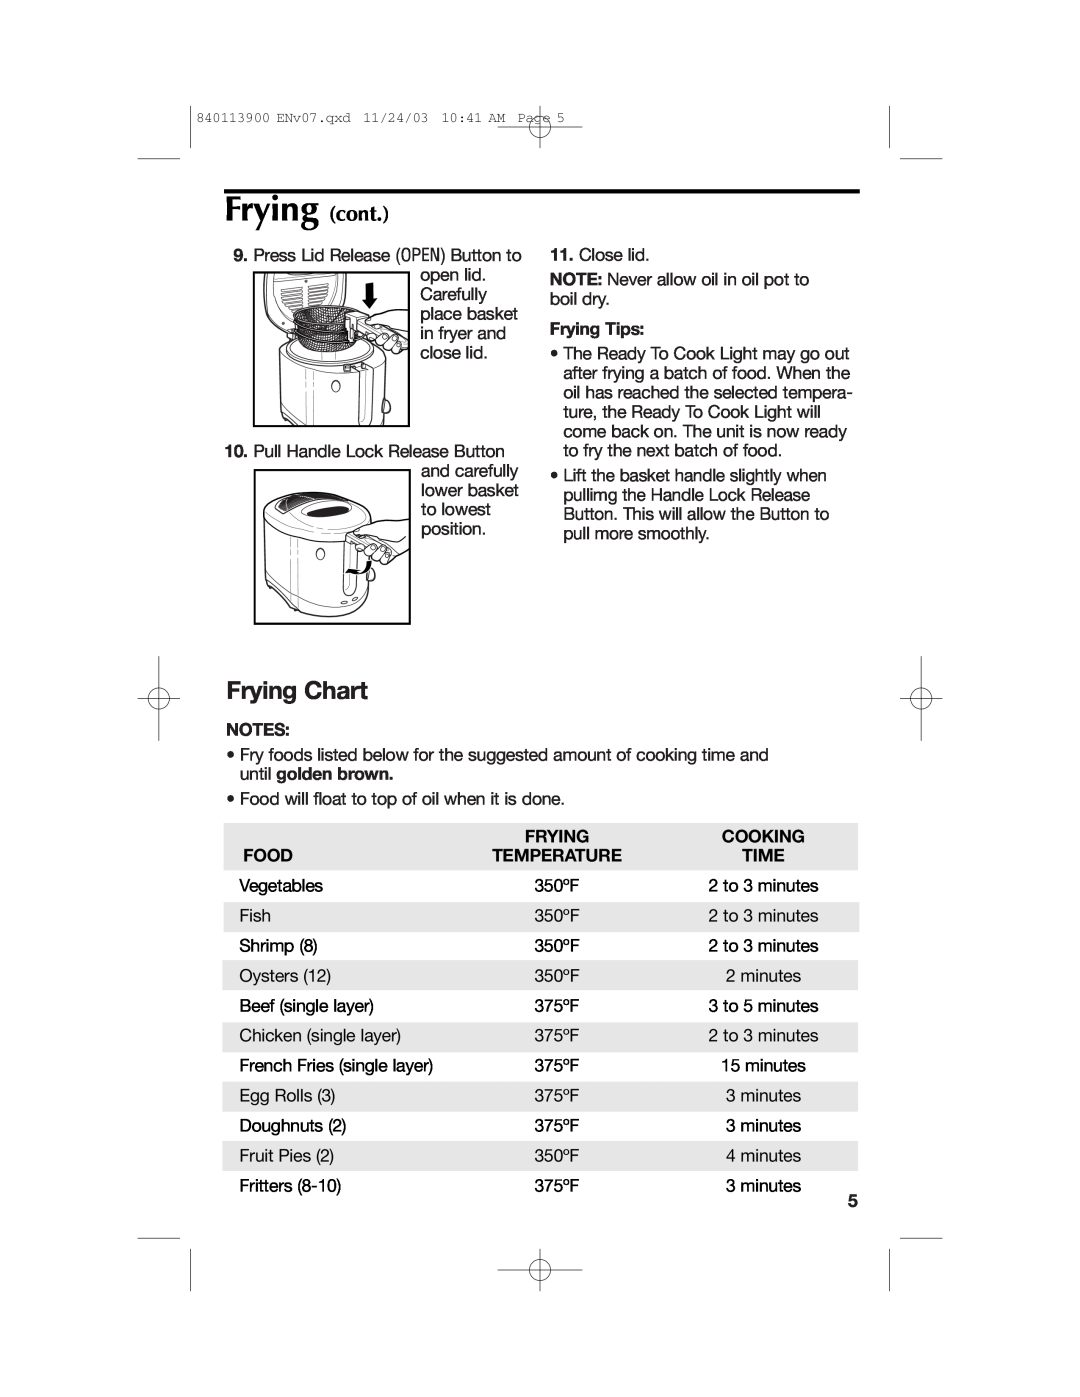 Hamilton Beach 35015 manual Frying cont, Frying Chart 